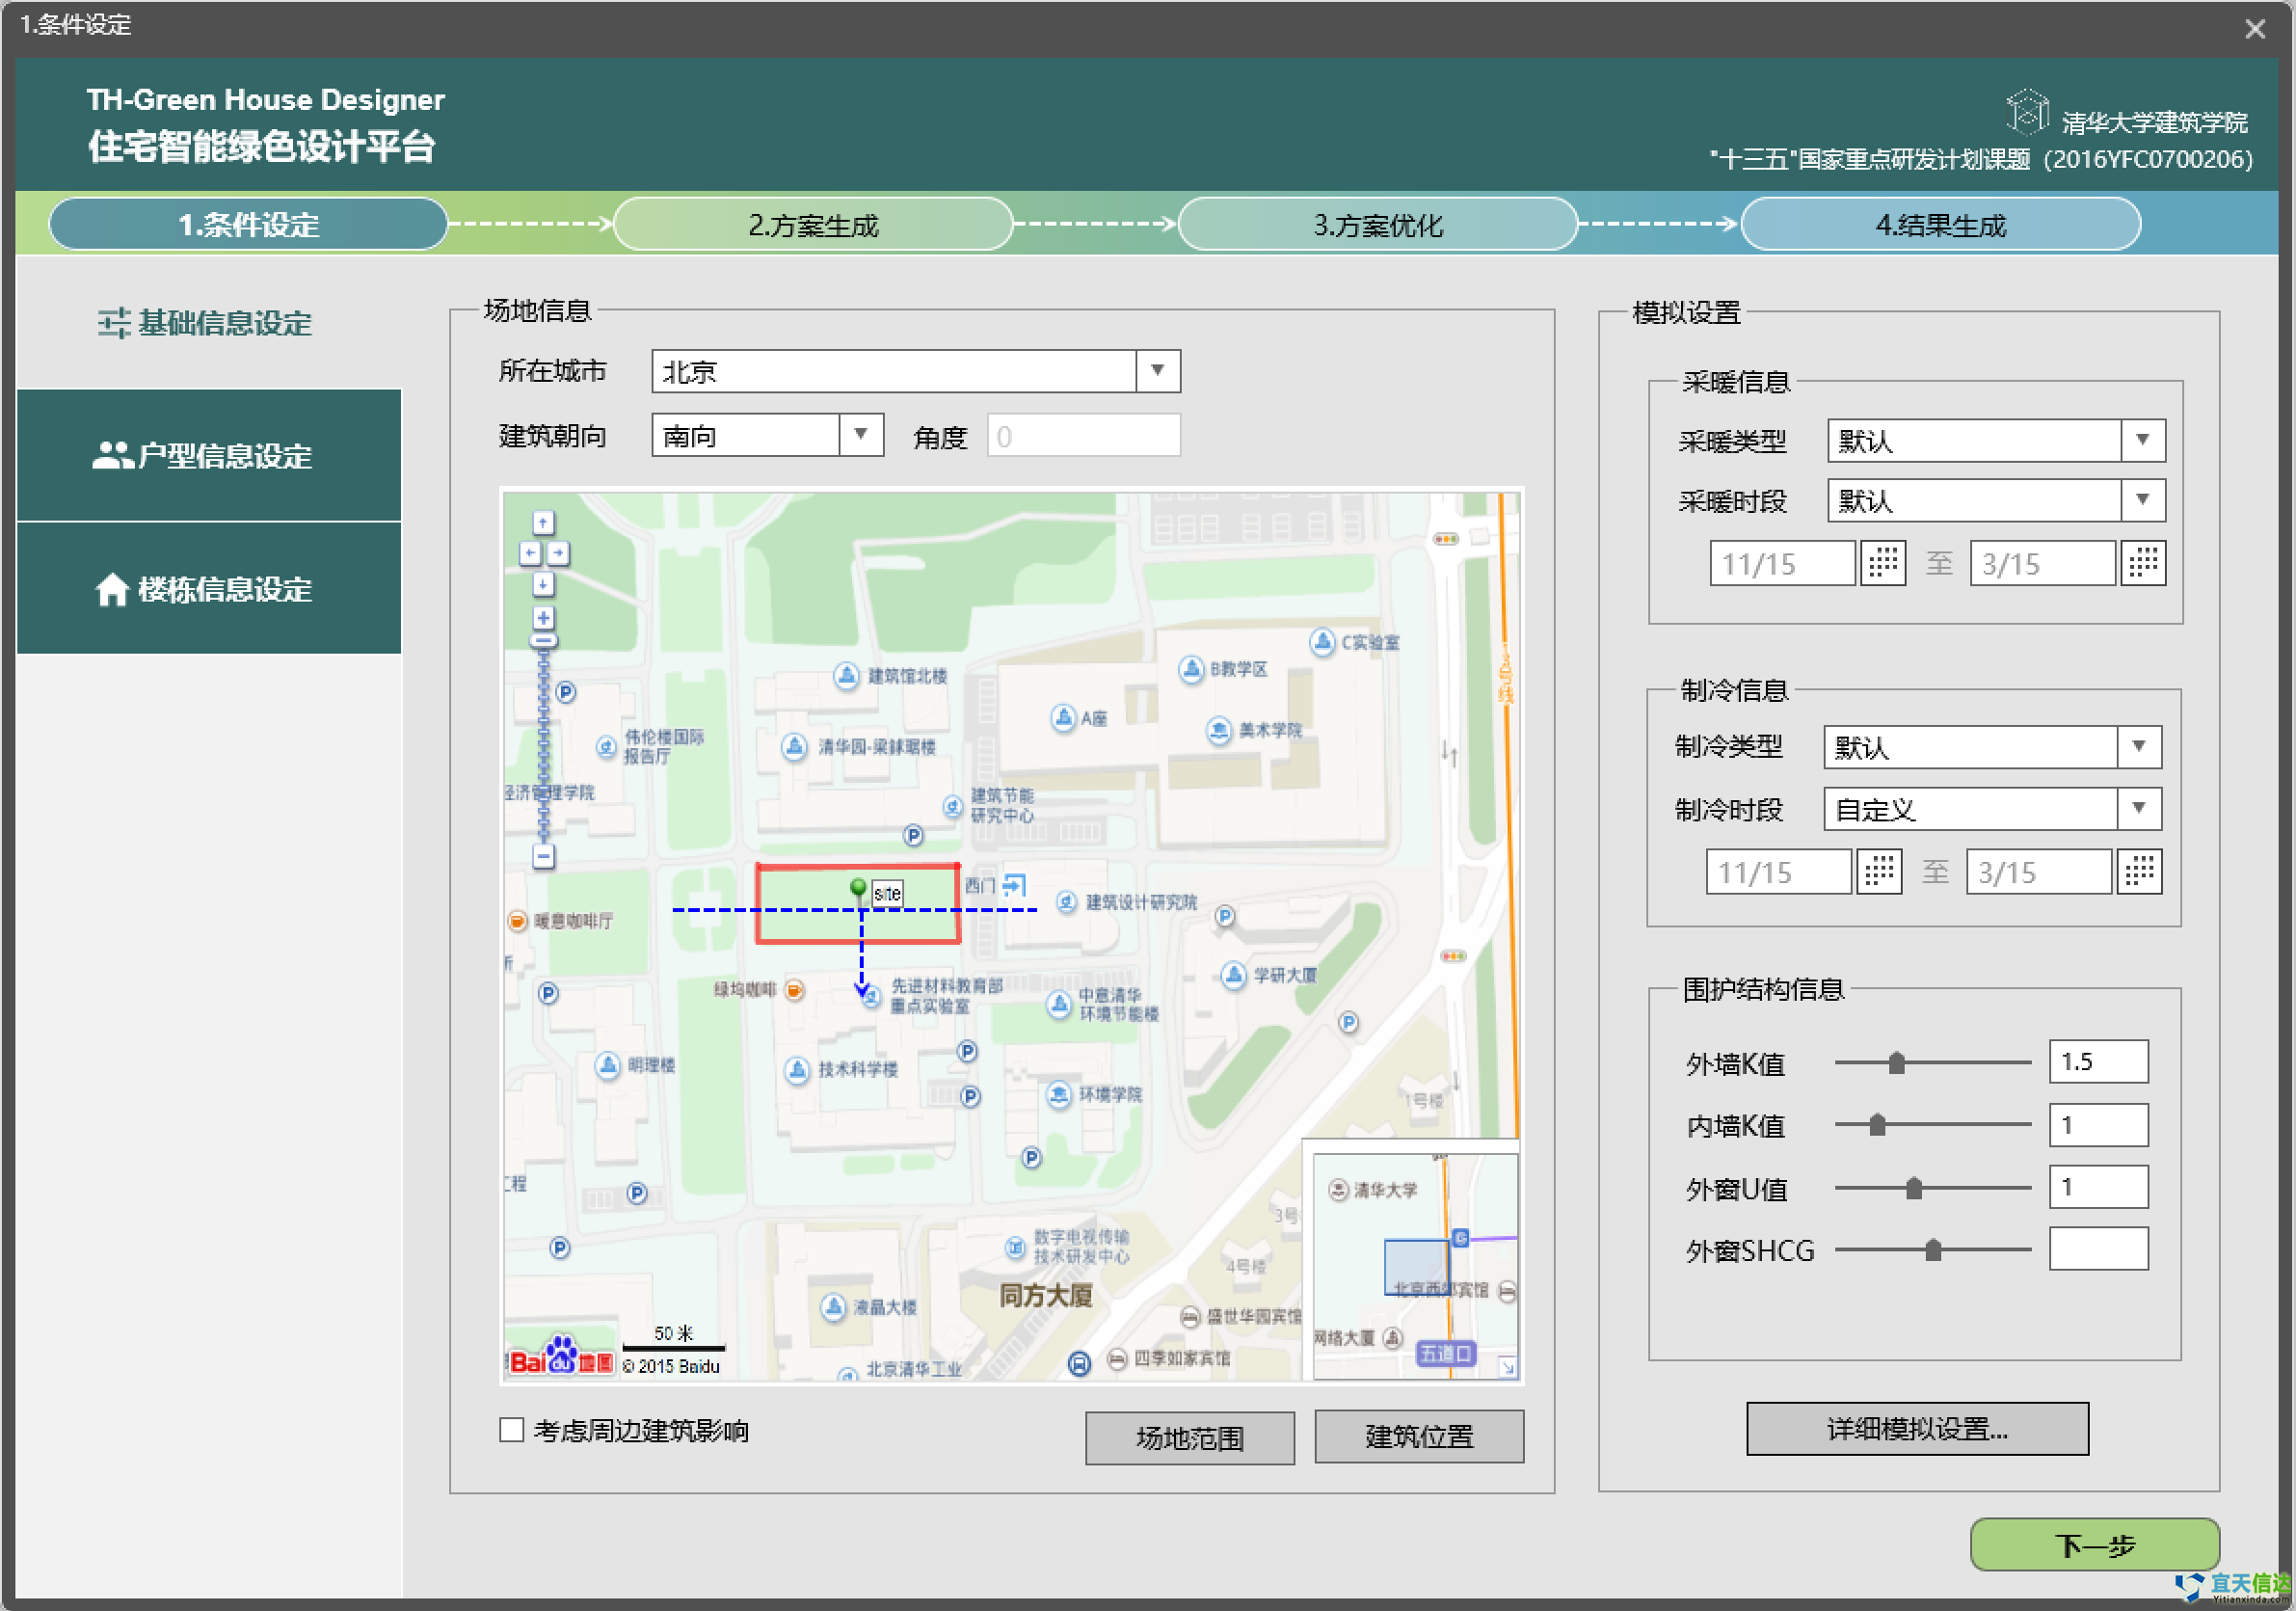 北京软件公司宜天信达与清华大学建筑学院合作开发的TH-Green House Designer系统